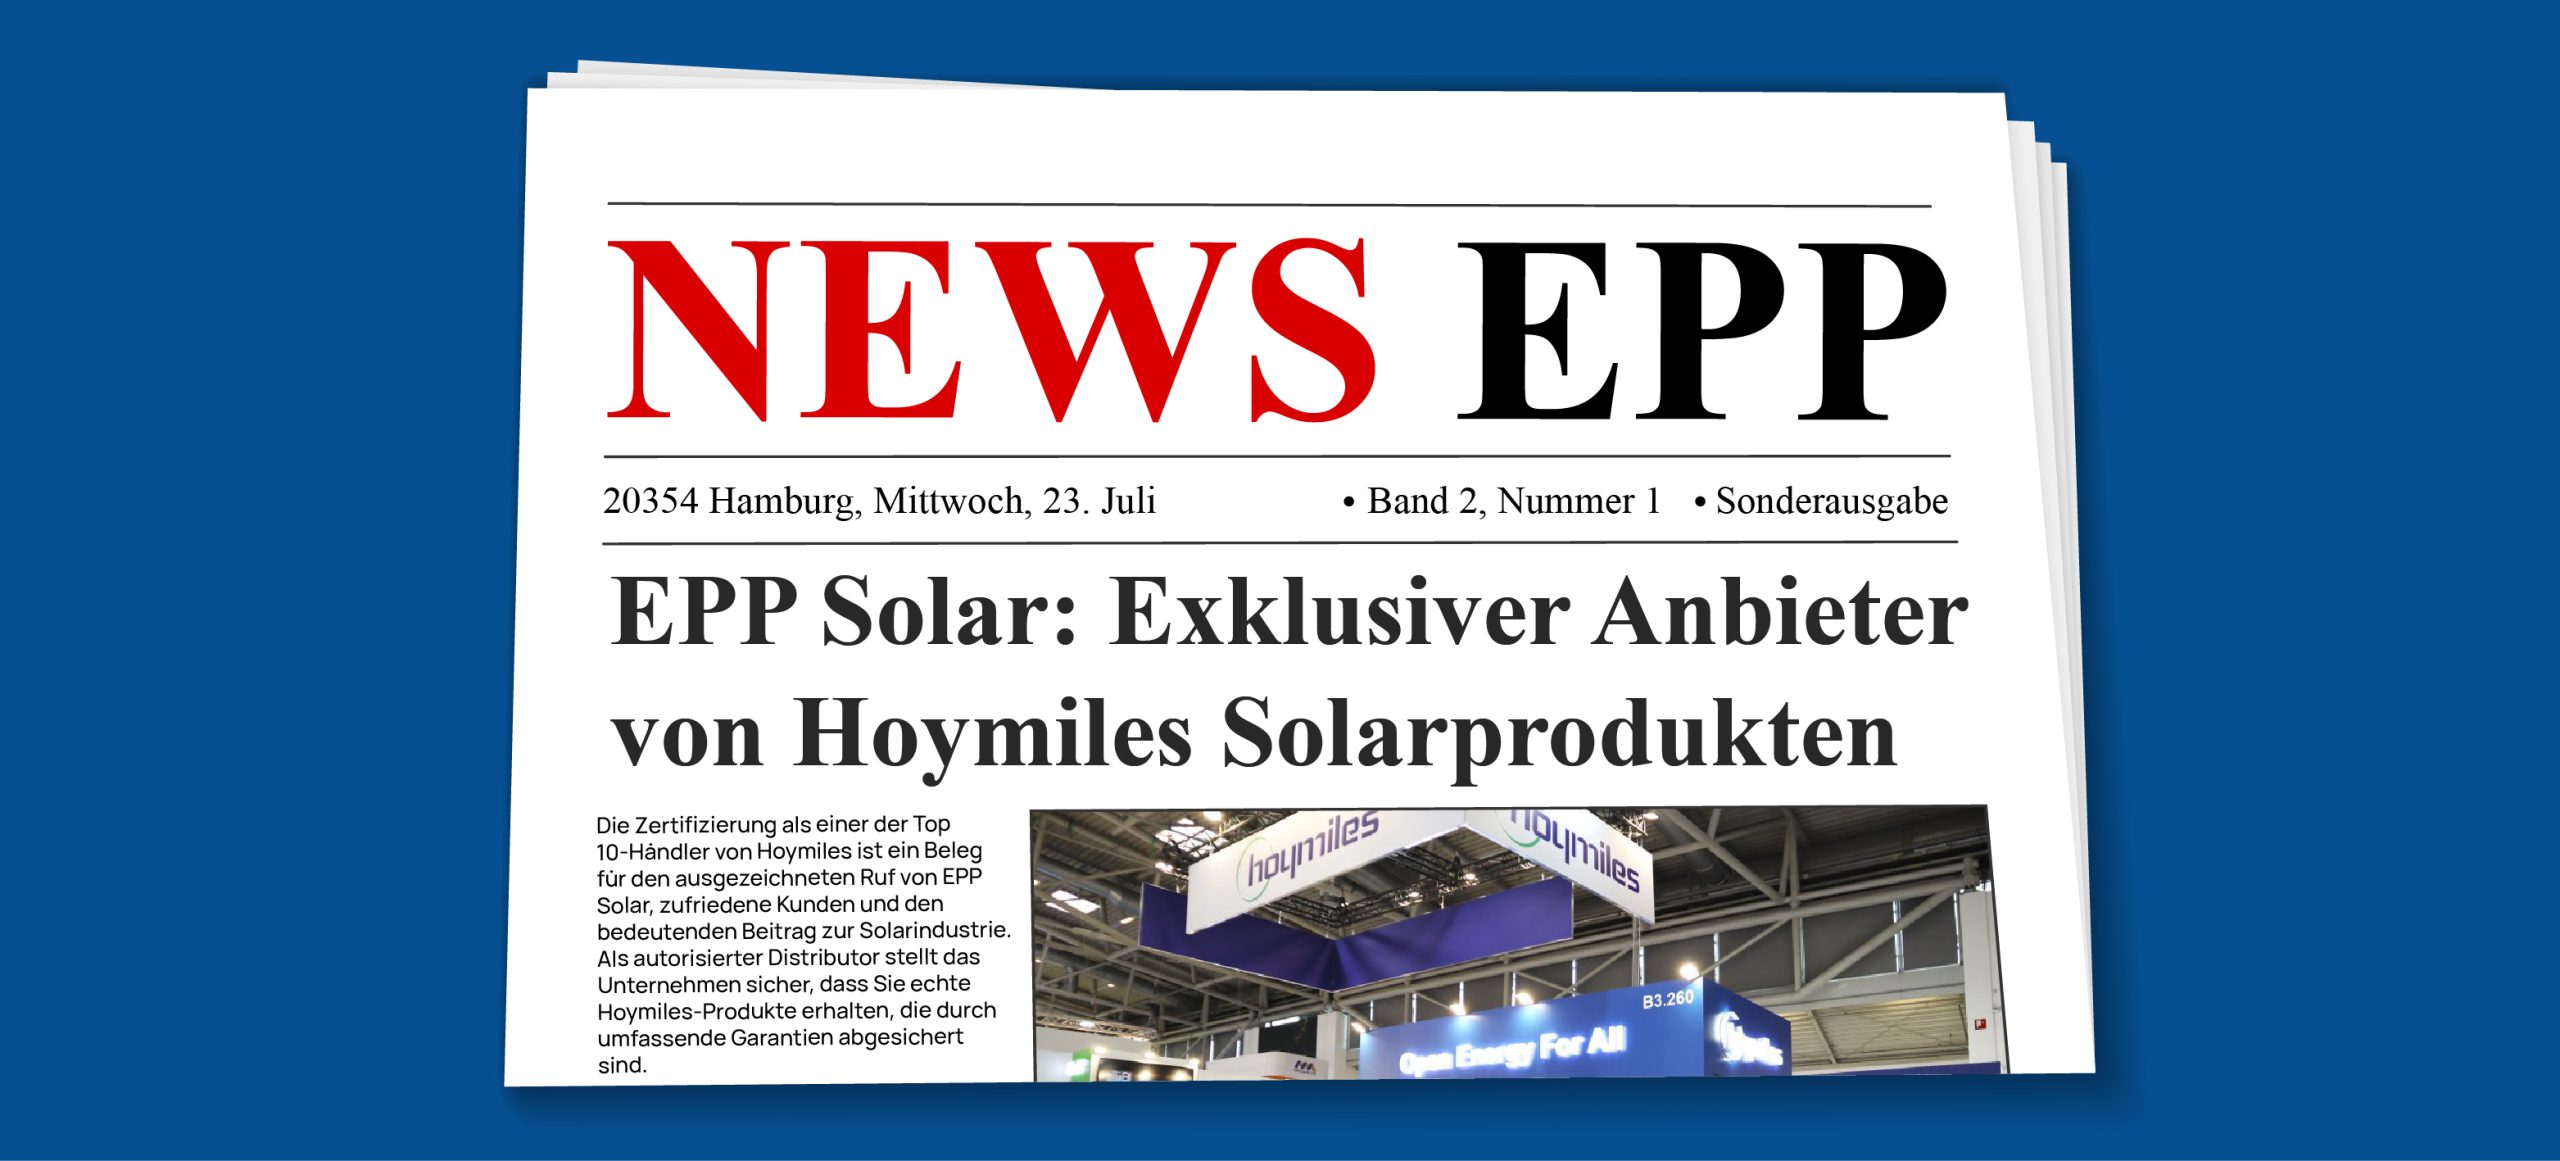 EPP Solar - Anbieter für Hoymiles